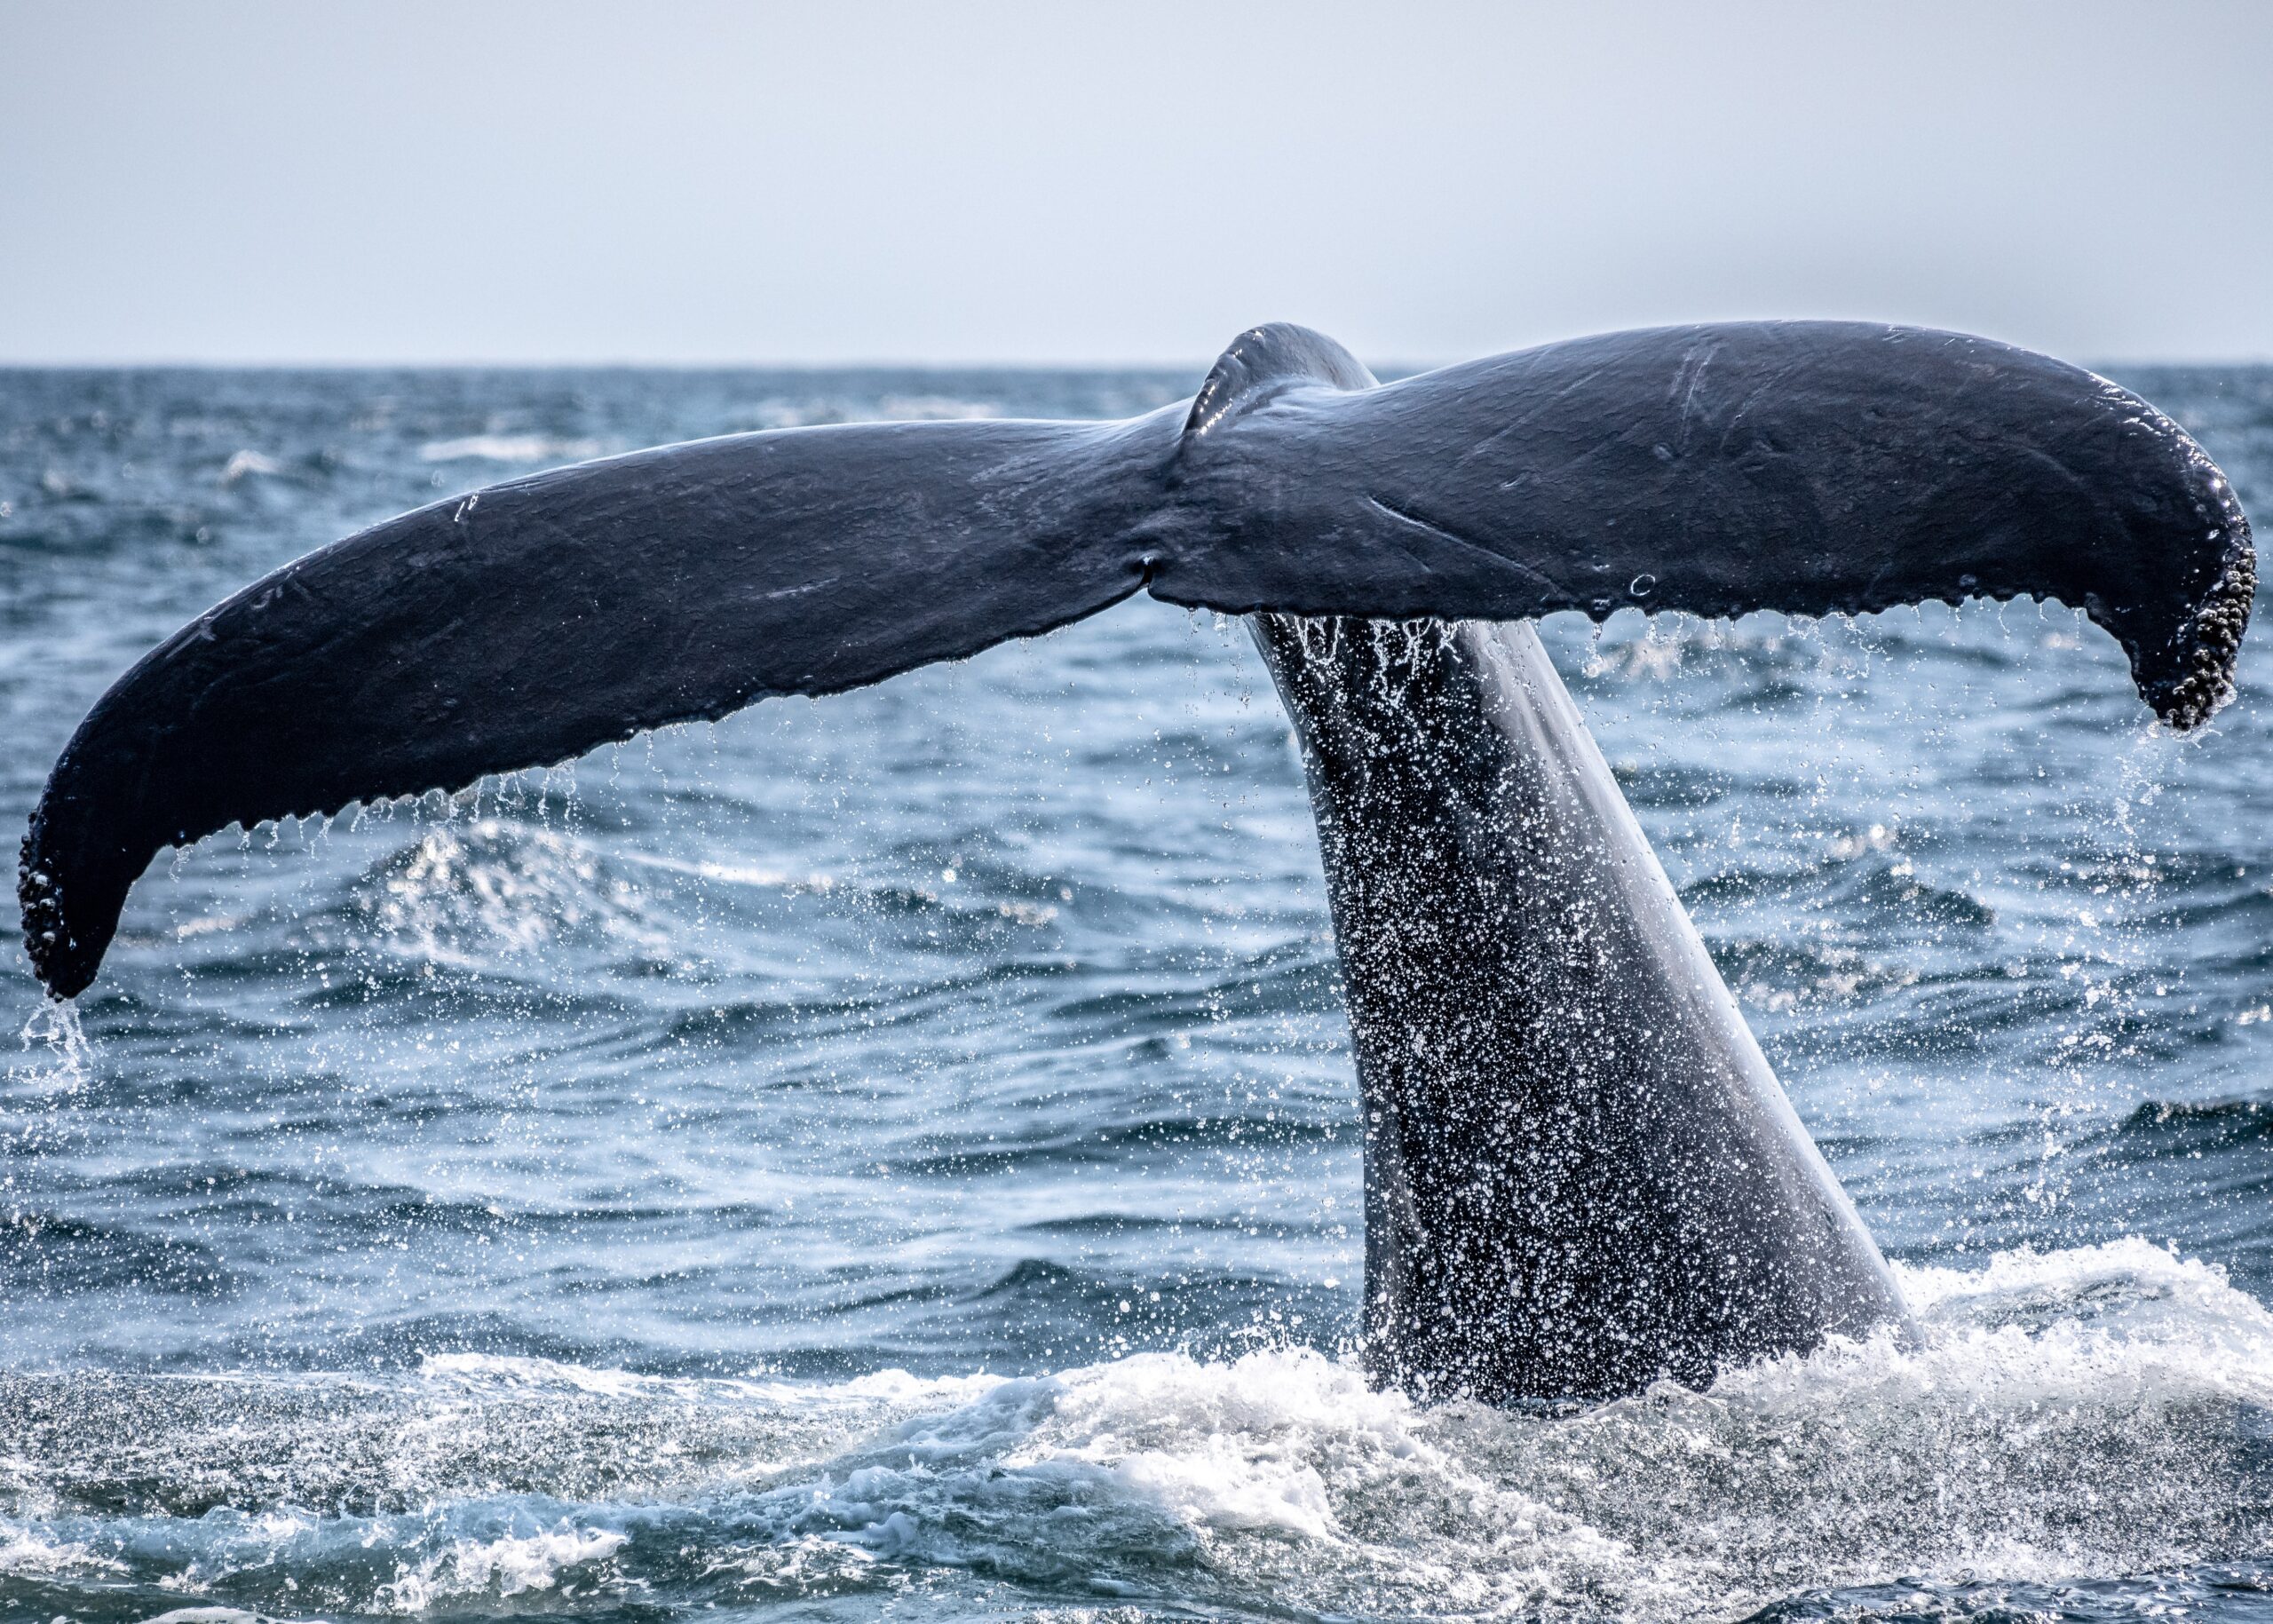 Zdjęcie nurkującego wieloryba